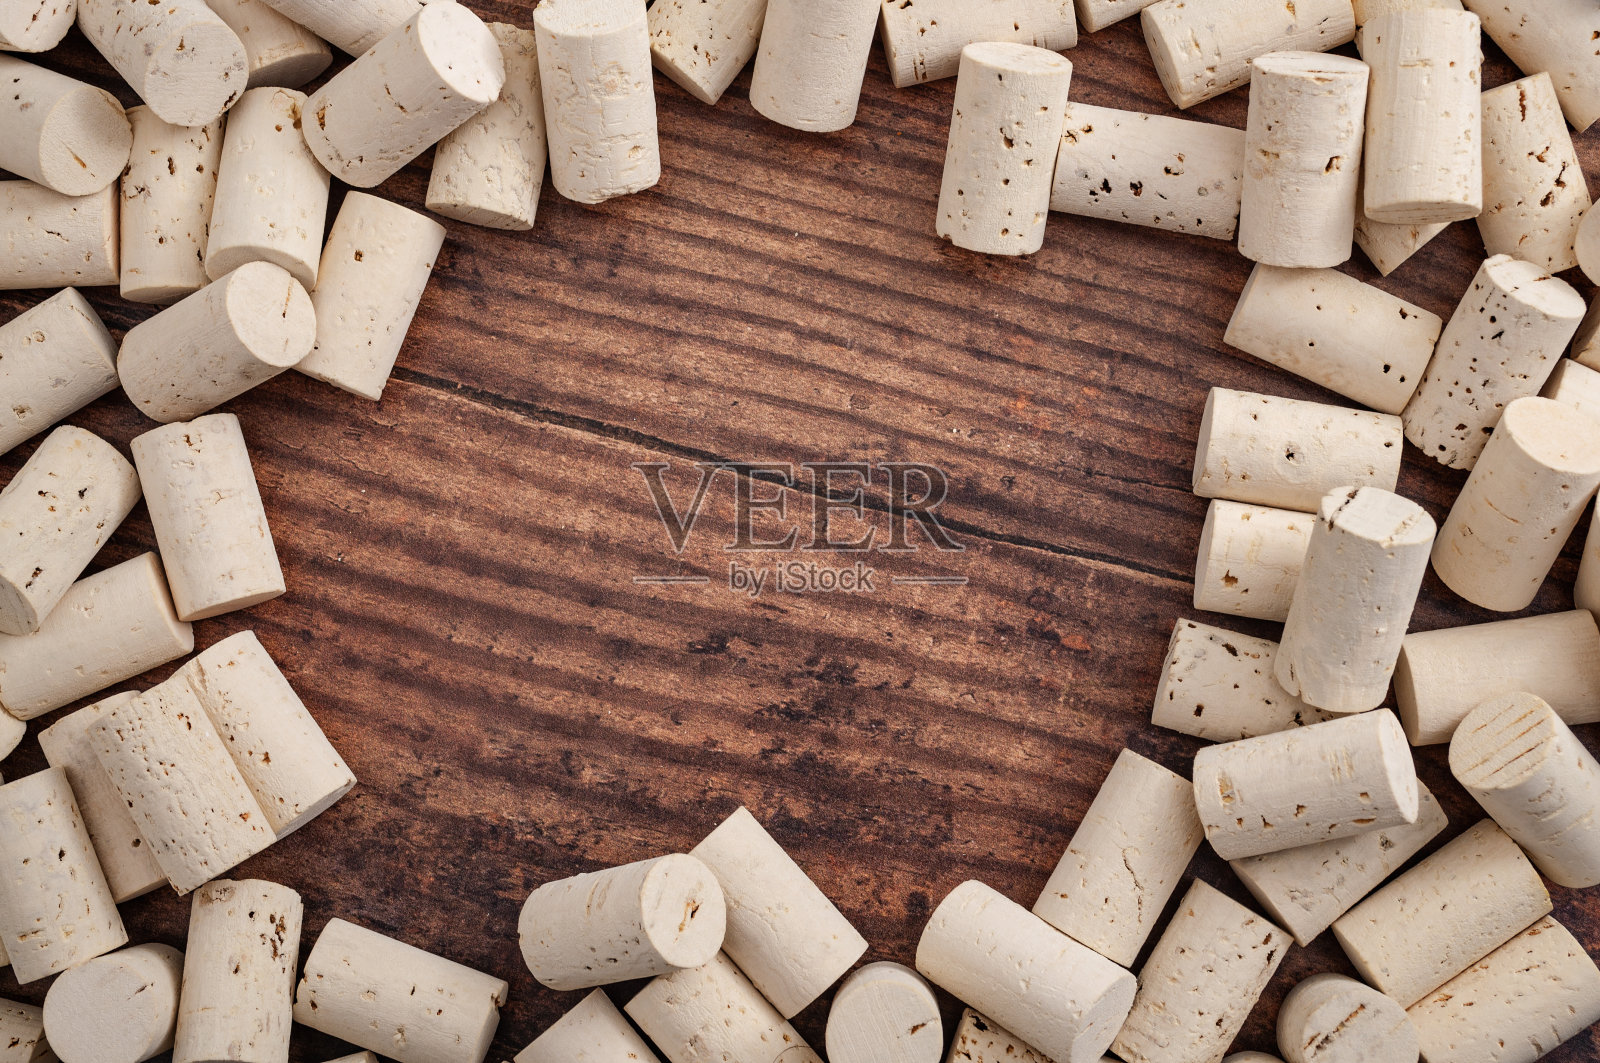 酒窖，酒厂背景和精品葡萄酒的概念选择与完整的框架拍摄的酒瓶软木塞在木材背景与复制空间照片摄影图片